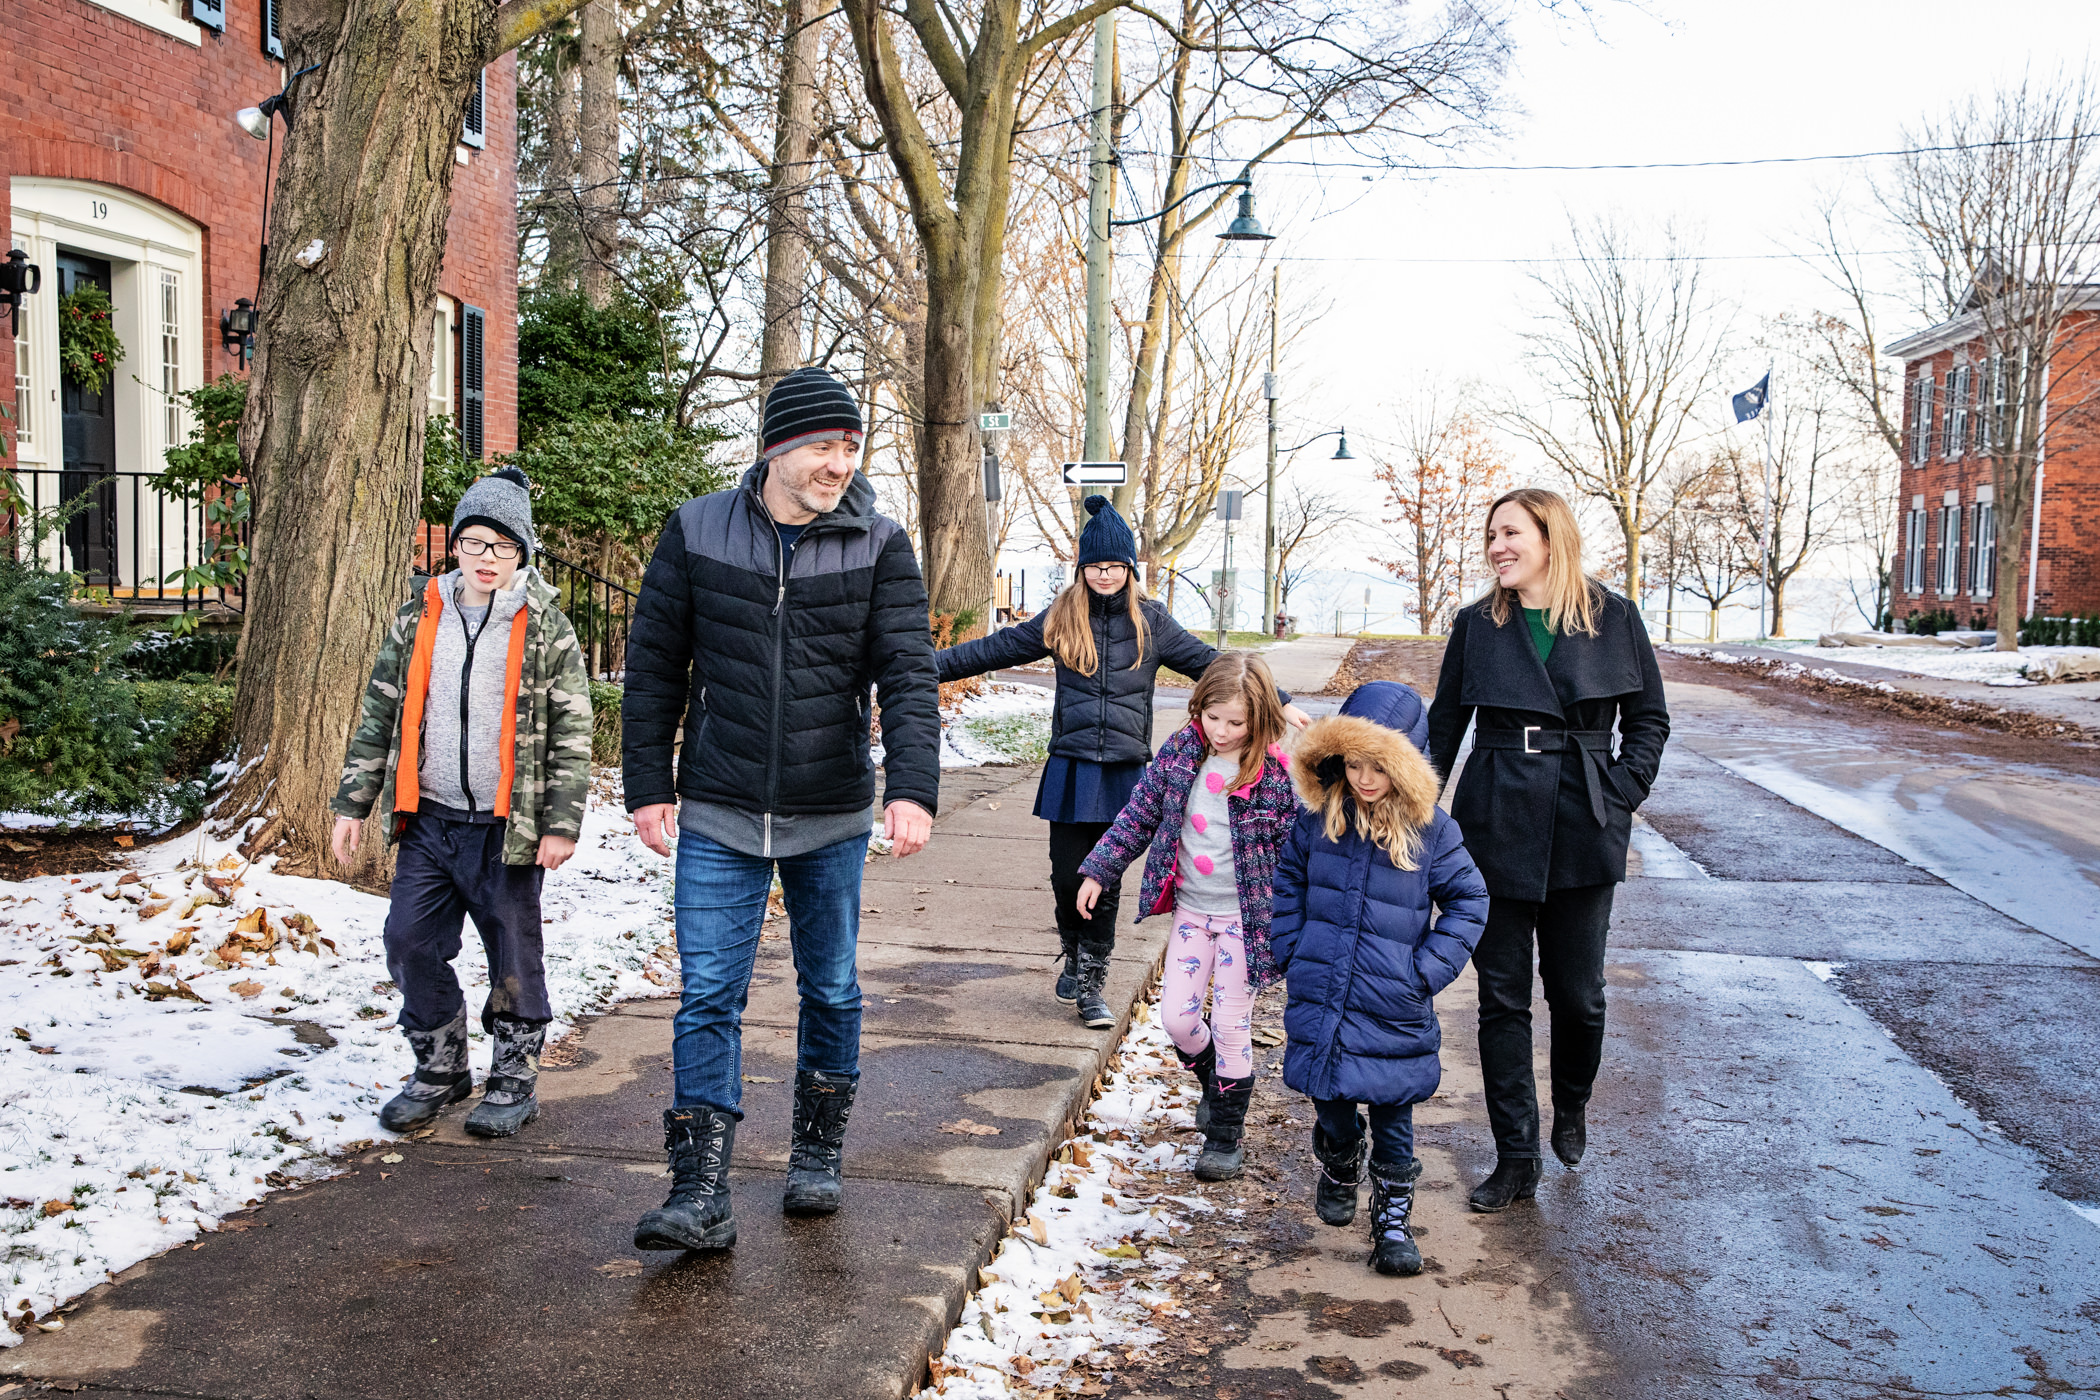 blended family walking on snowy street in oakville